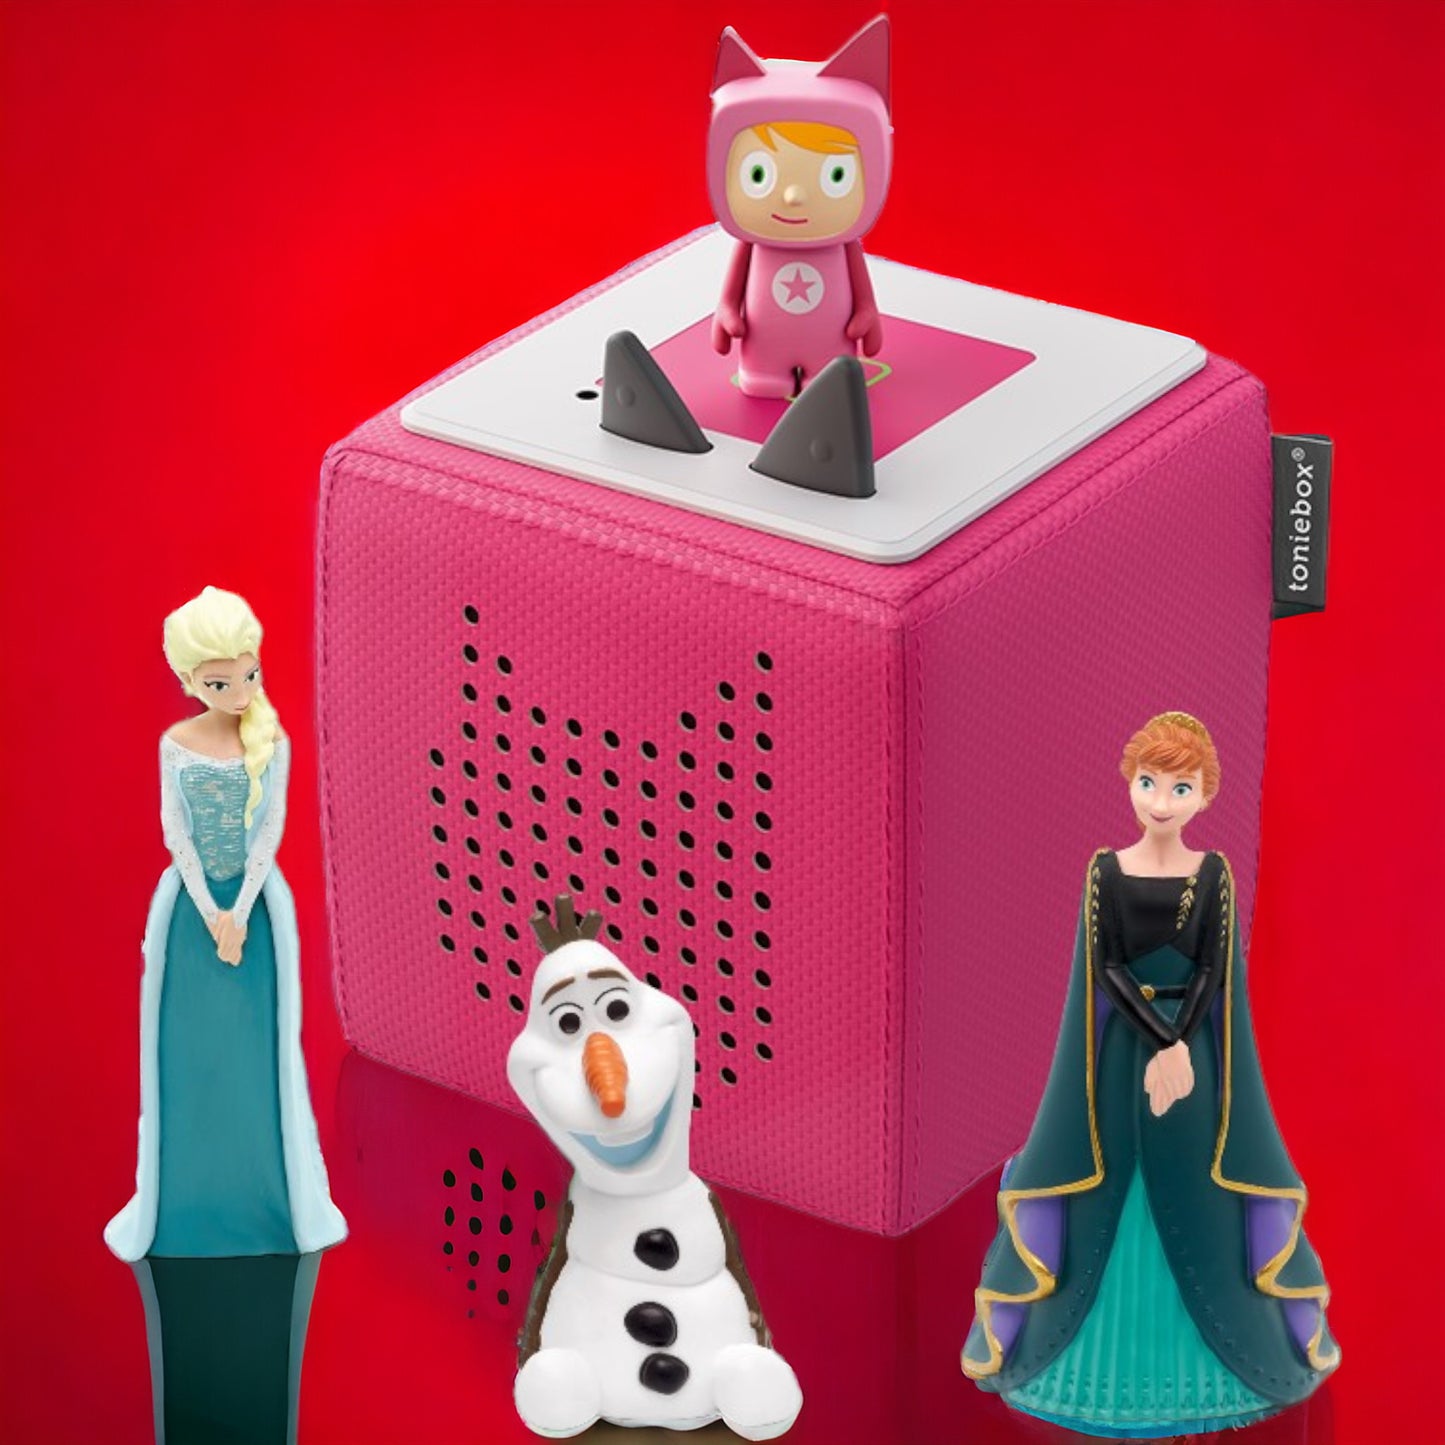 Toniebox | Extrapack | Starterset inclusive 2 EISKÖNIGINNEN + OLAF Hörfigur | Farbe der Box Pink